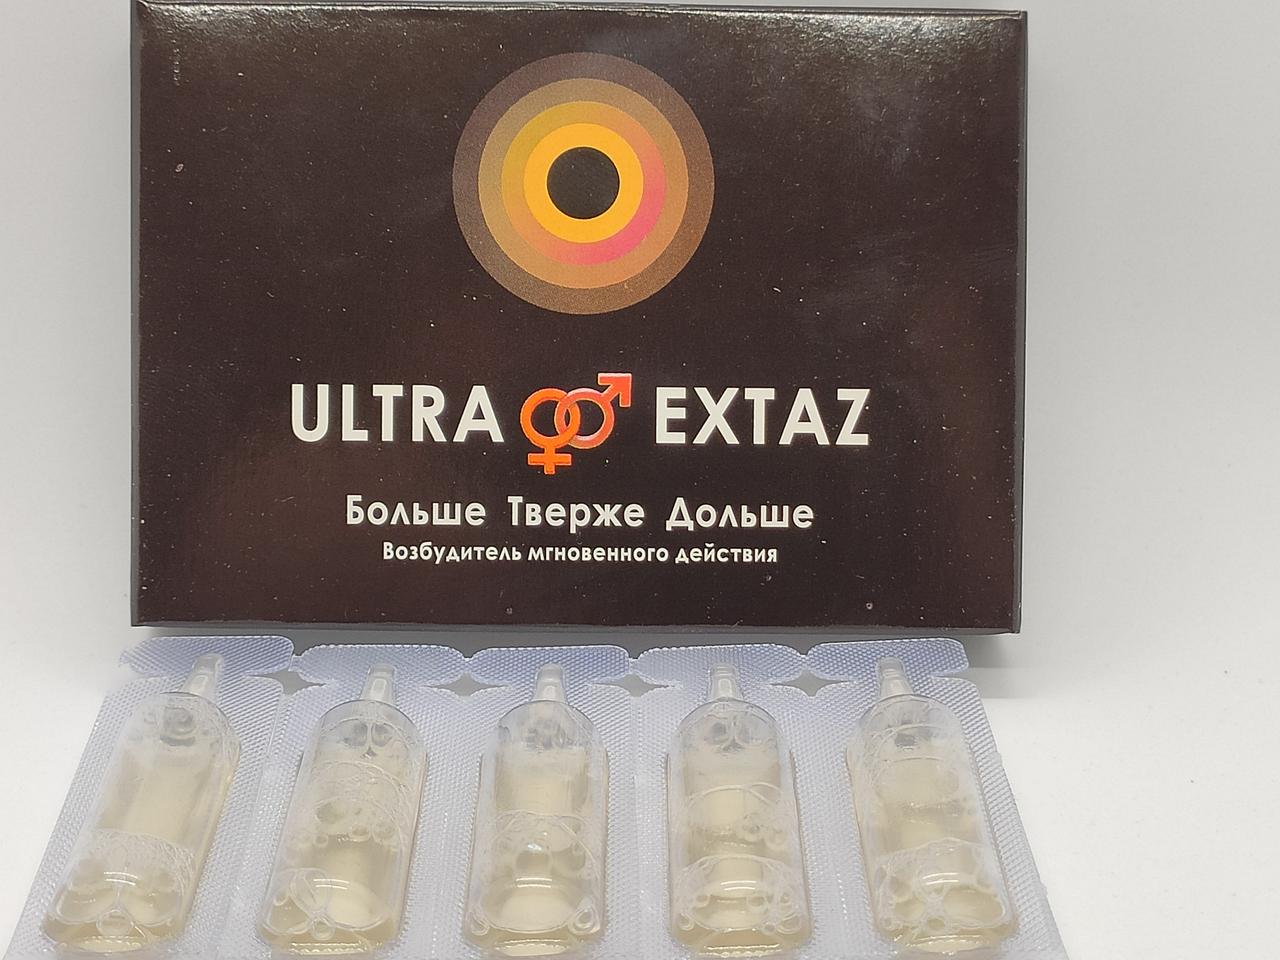 Ultra Extaz - Возбудитель мгновенного действия